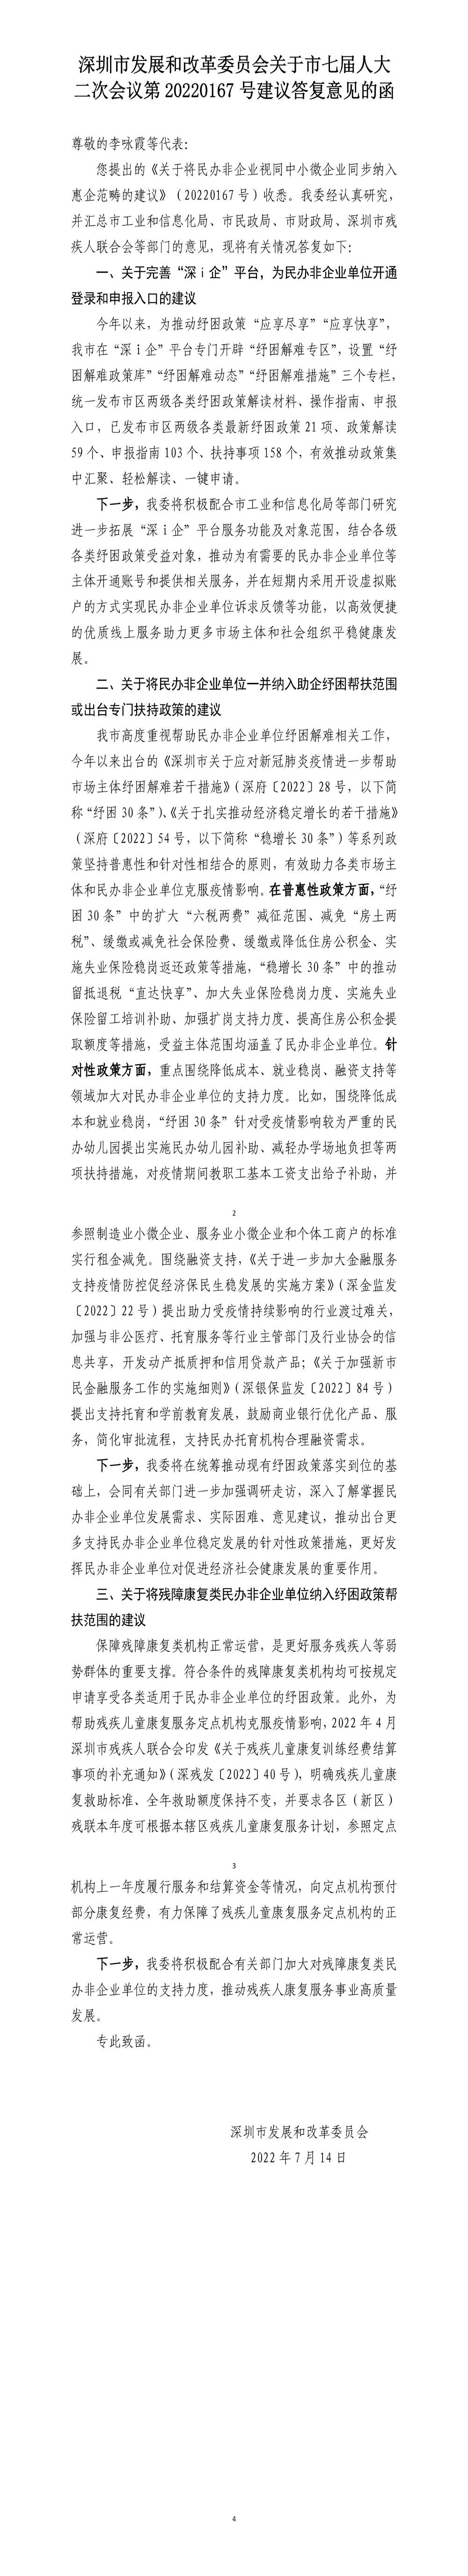 深圳市发展和改革委员会关于市七届人大二次会议第20220167号建议答复意见的函.jpg